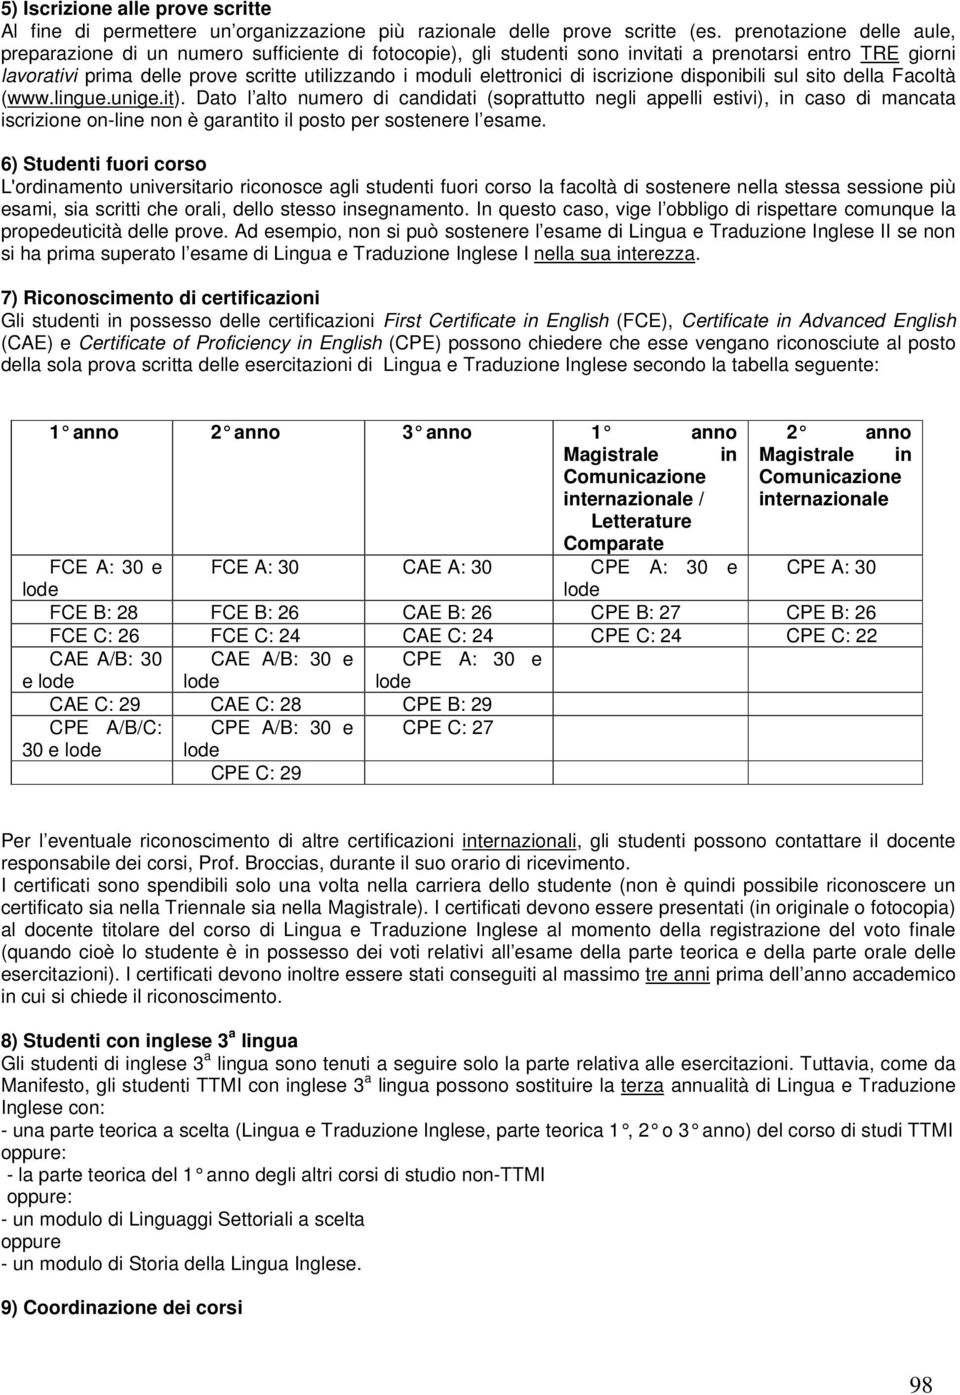 elettronici di iscrizione disponibili sul sito della Facoltà (www.lingue.unige.it).